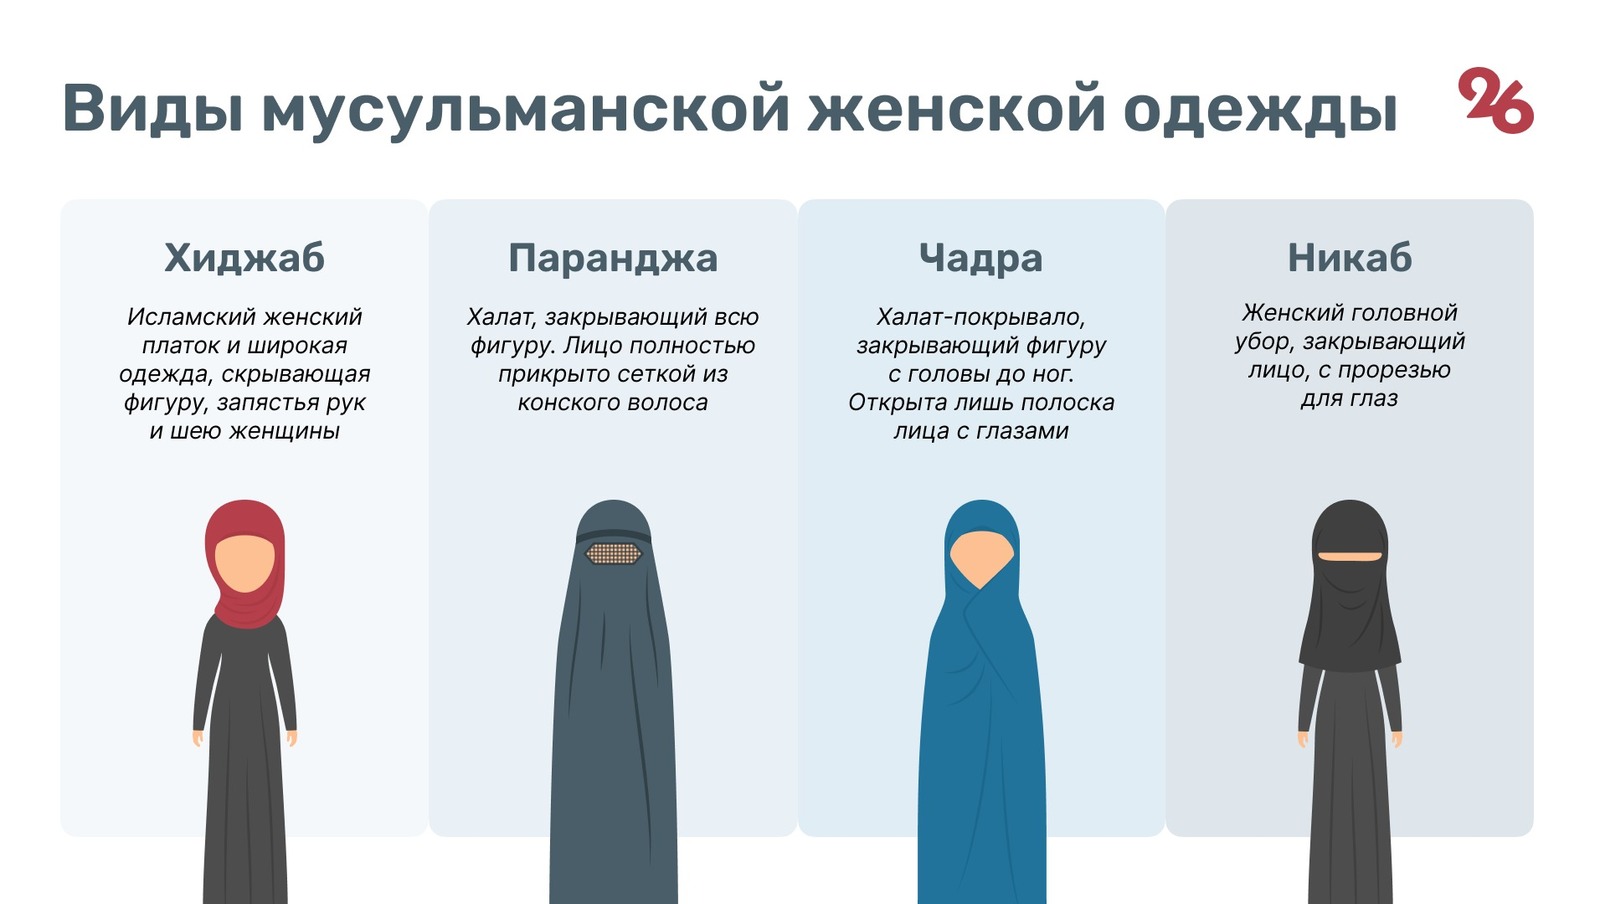 Зачем мусульманский. Никаб чадра. Разновидности хиджаба. Одежда мусульманских женщин название.